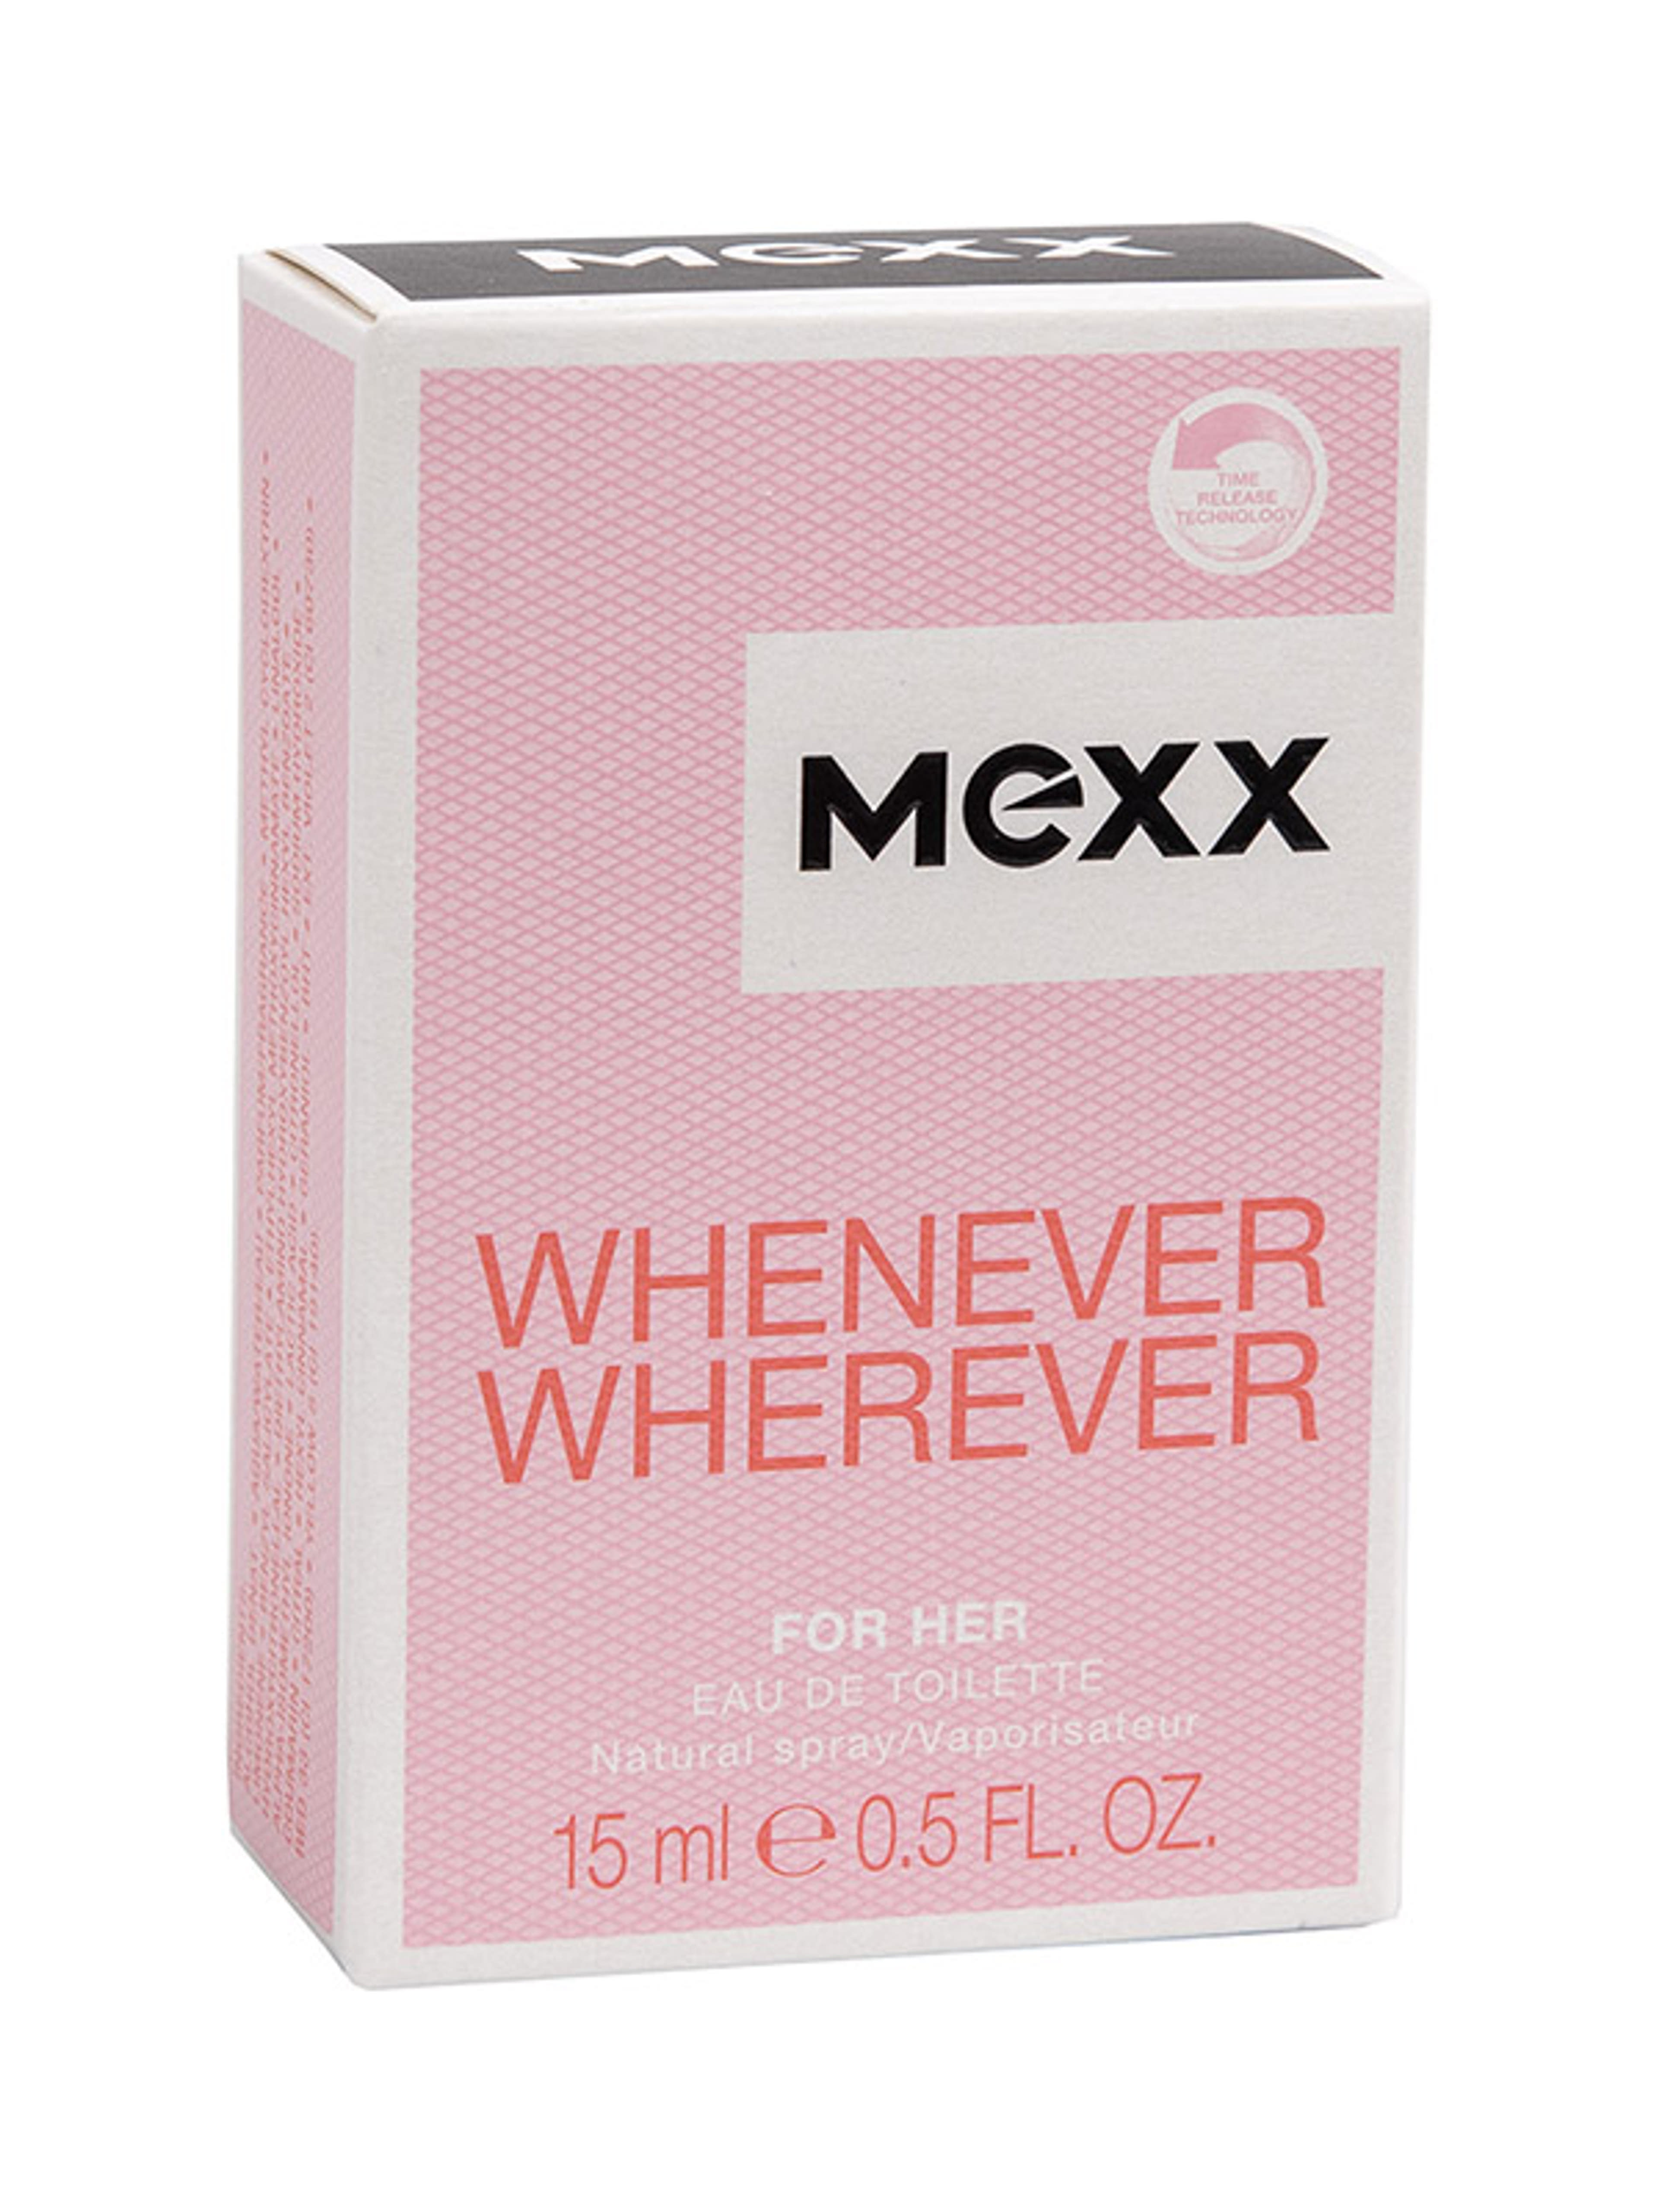 Mexx Whenever Wherever női Eau de Toilette - 15 ml-1